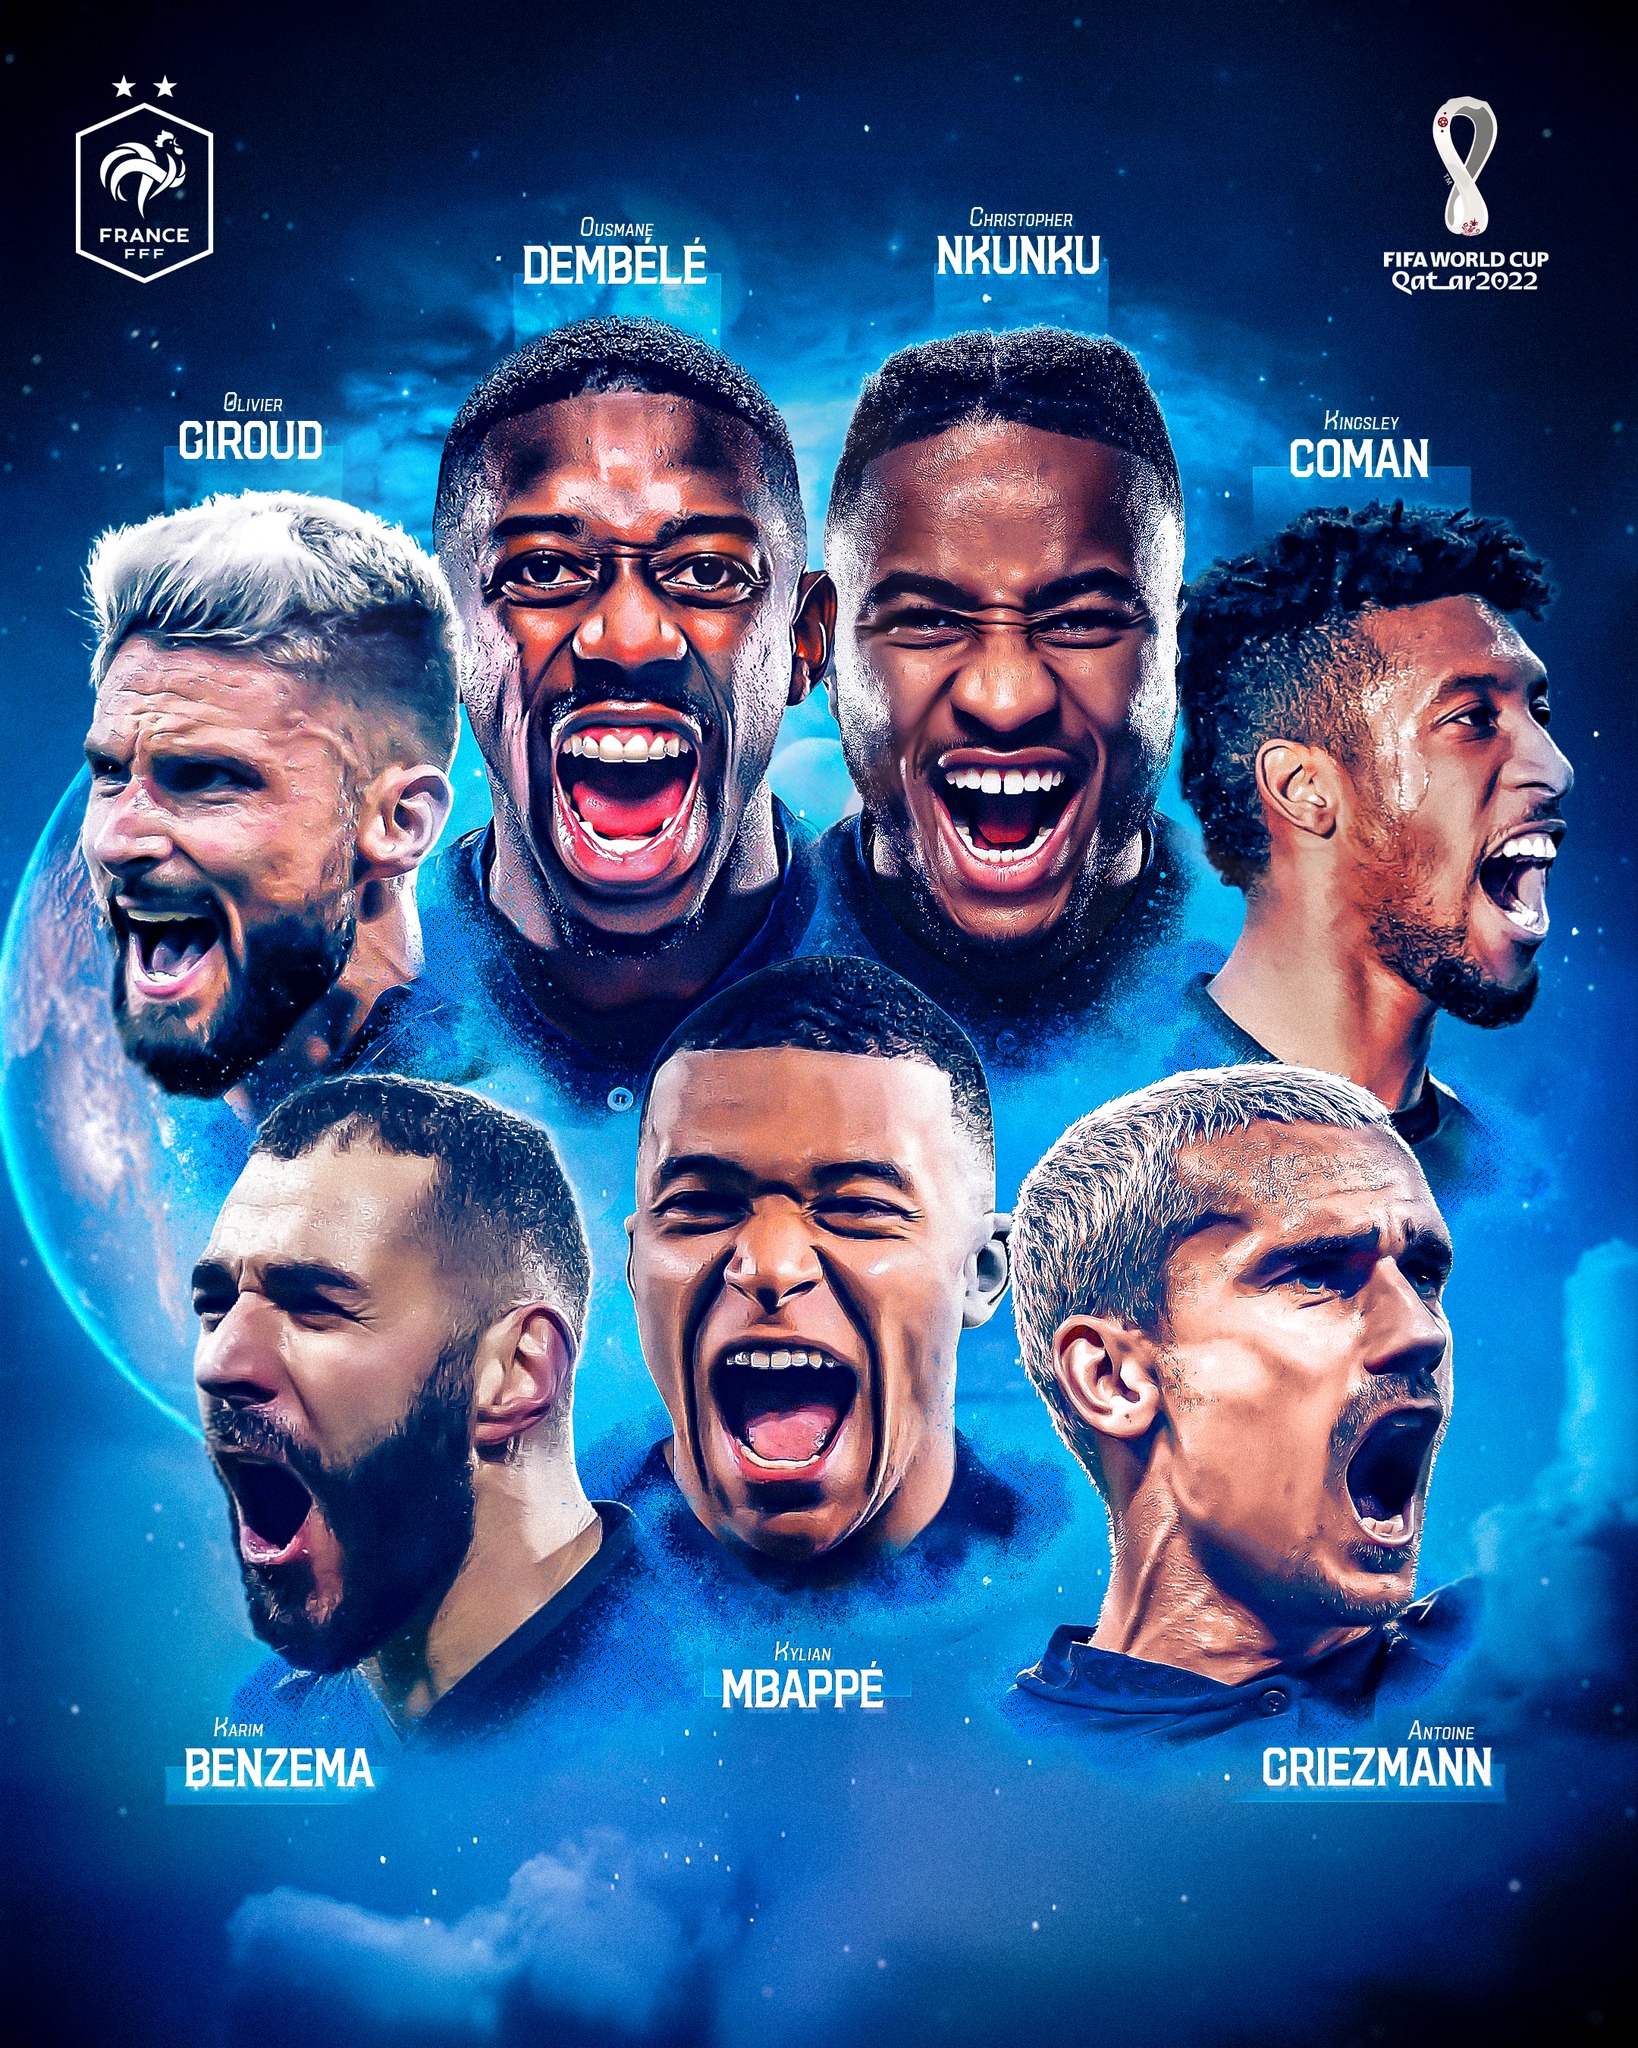 Tuyển Pháp, World Cup 2022: Tuyển Pháp là một trong những đội bóng mạnh nhất thế giới với nhiều ngôi sao tài năng. Vào năm 2022, họ sẽ có cơ hội tham gia vào World Cup và cạnh tranh cho chức vô địch. Hãy cùng ước mơ với đội tuyển Pháp và nhấn vào ảnh để xem những pha bóng đẳng cấp của các ngôi sao đang khoác áo tuyển nhà.